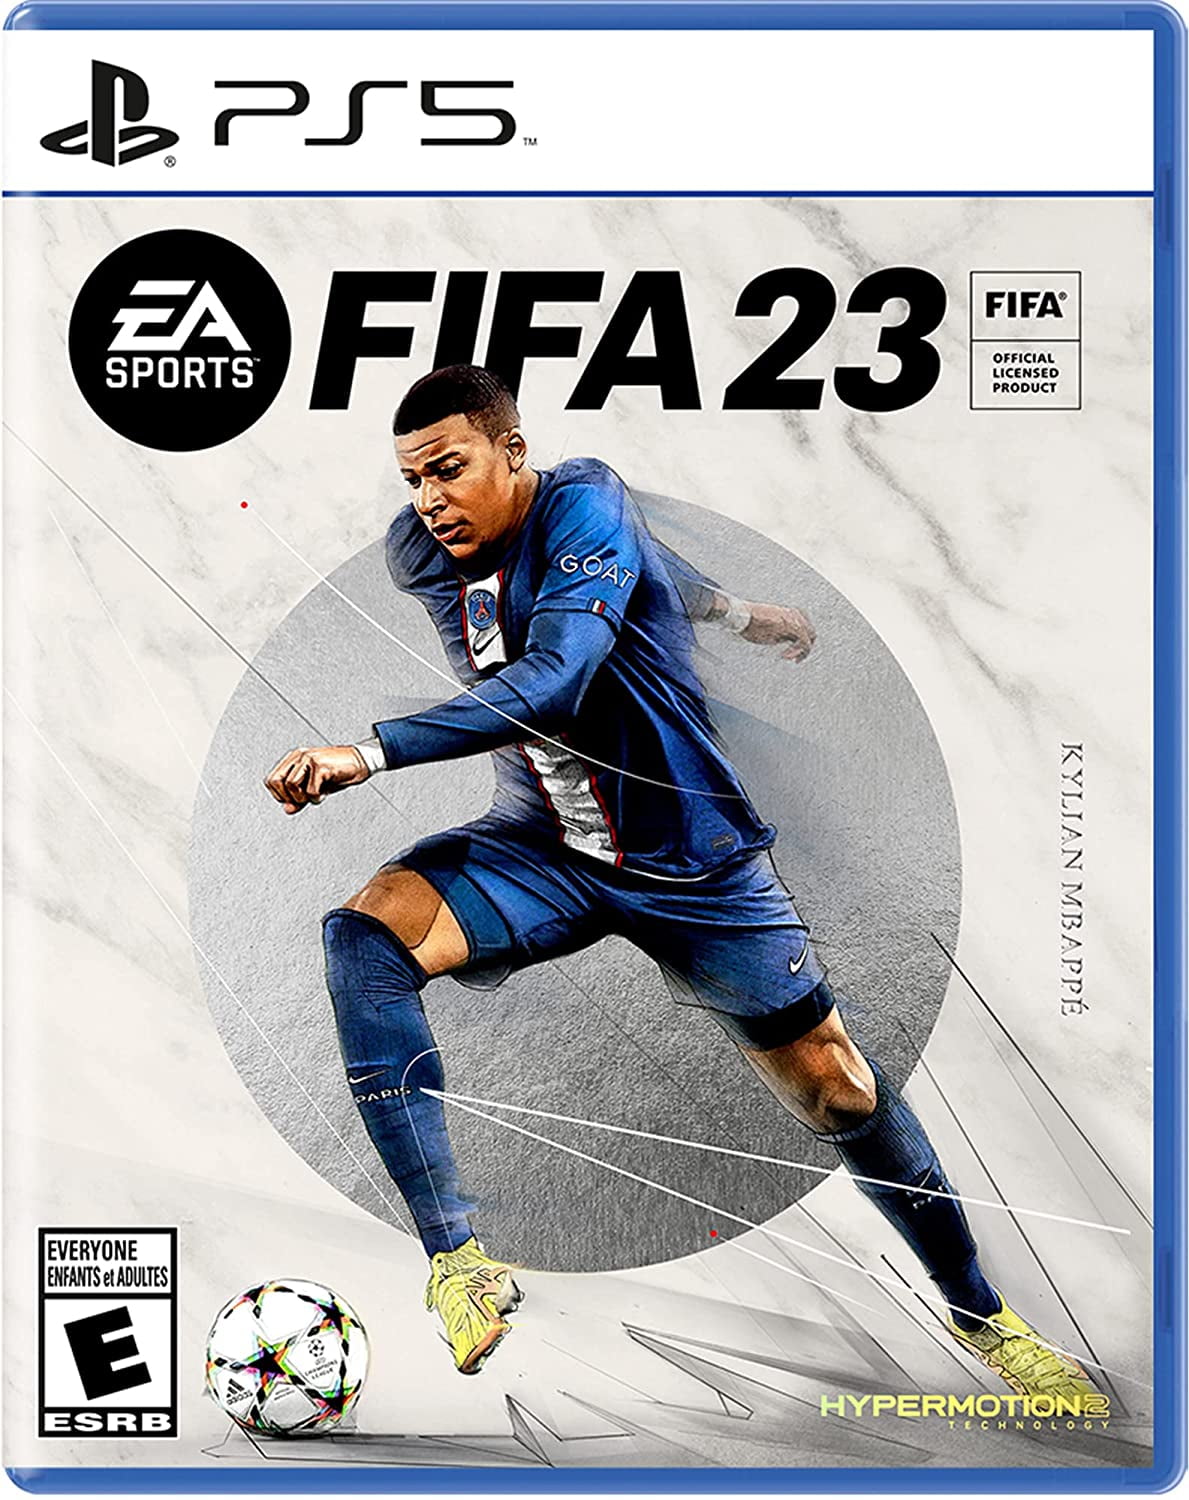 Console Playstation 5 + FIFA 23 - PS5 em Promoção na Americanas